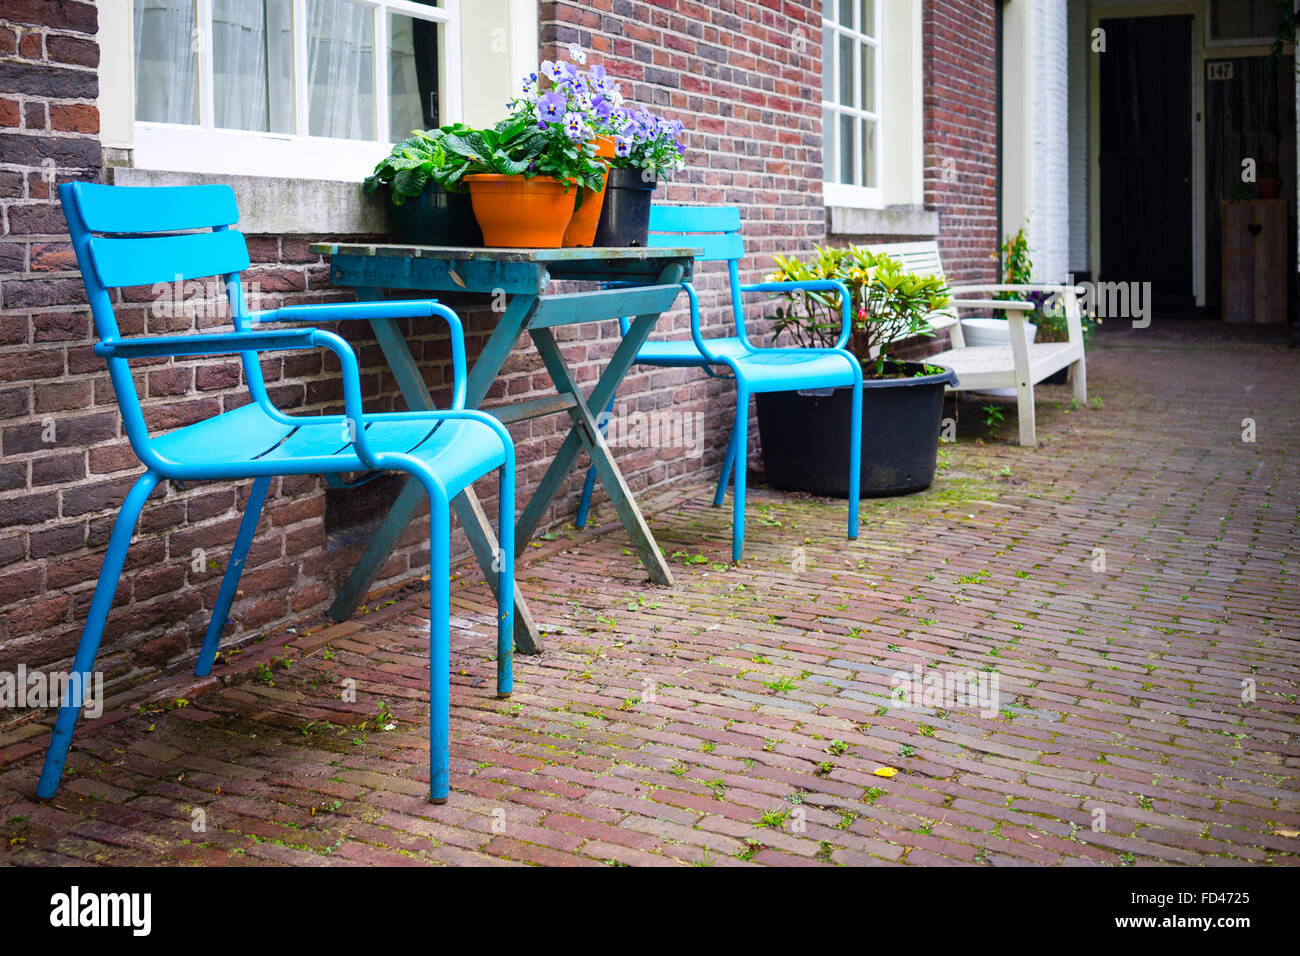 Amsterdam - 16 Juni: Gemeinsame Orte der Ruhe im Zentrum von Amsterdam am 16. Juni 2015 Stockfoto